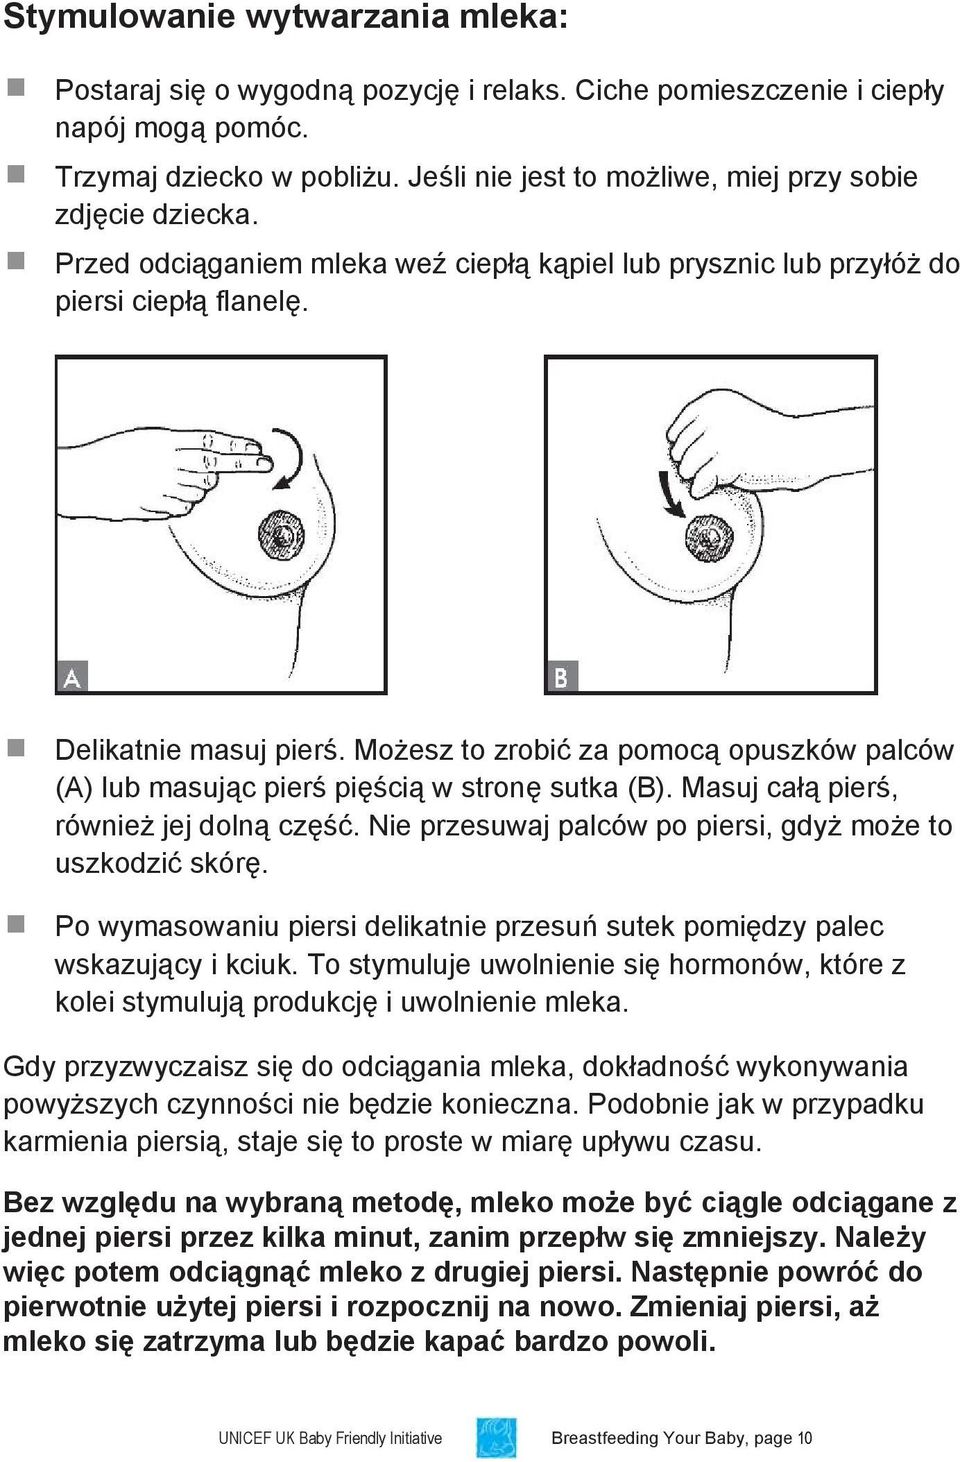 Możesz to zrobić za pomocą opuszków palców (A) lub masując pierś pięścią w stronę sutka (B). Masuj całą pierś, również jej dolną część. Nie przesuwaj palców po piersi, gdyż może to uszkodzić skórę.